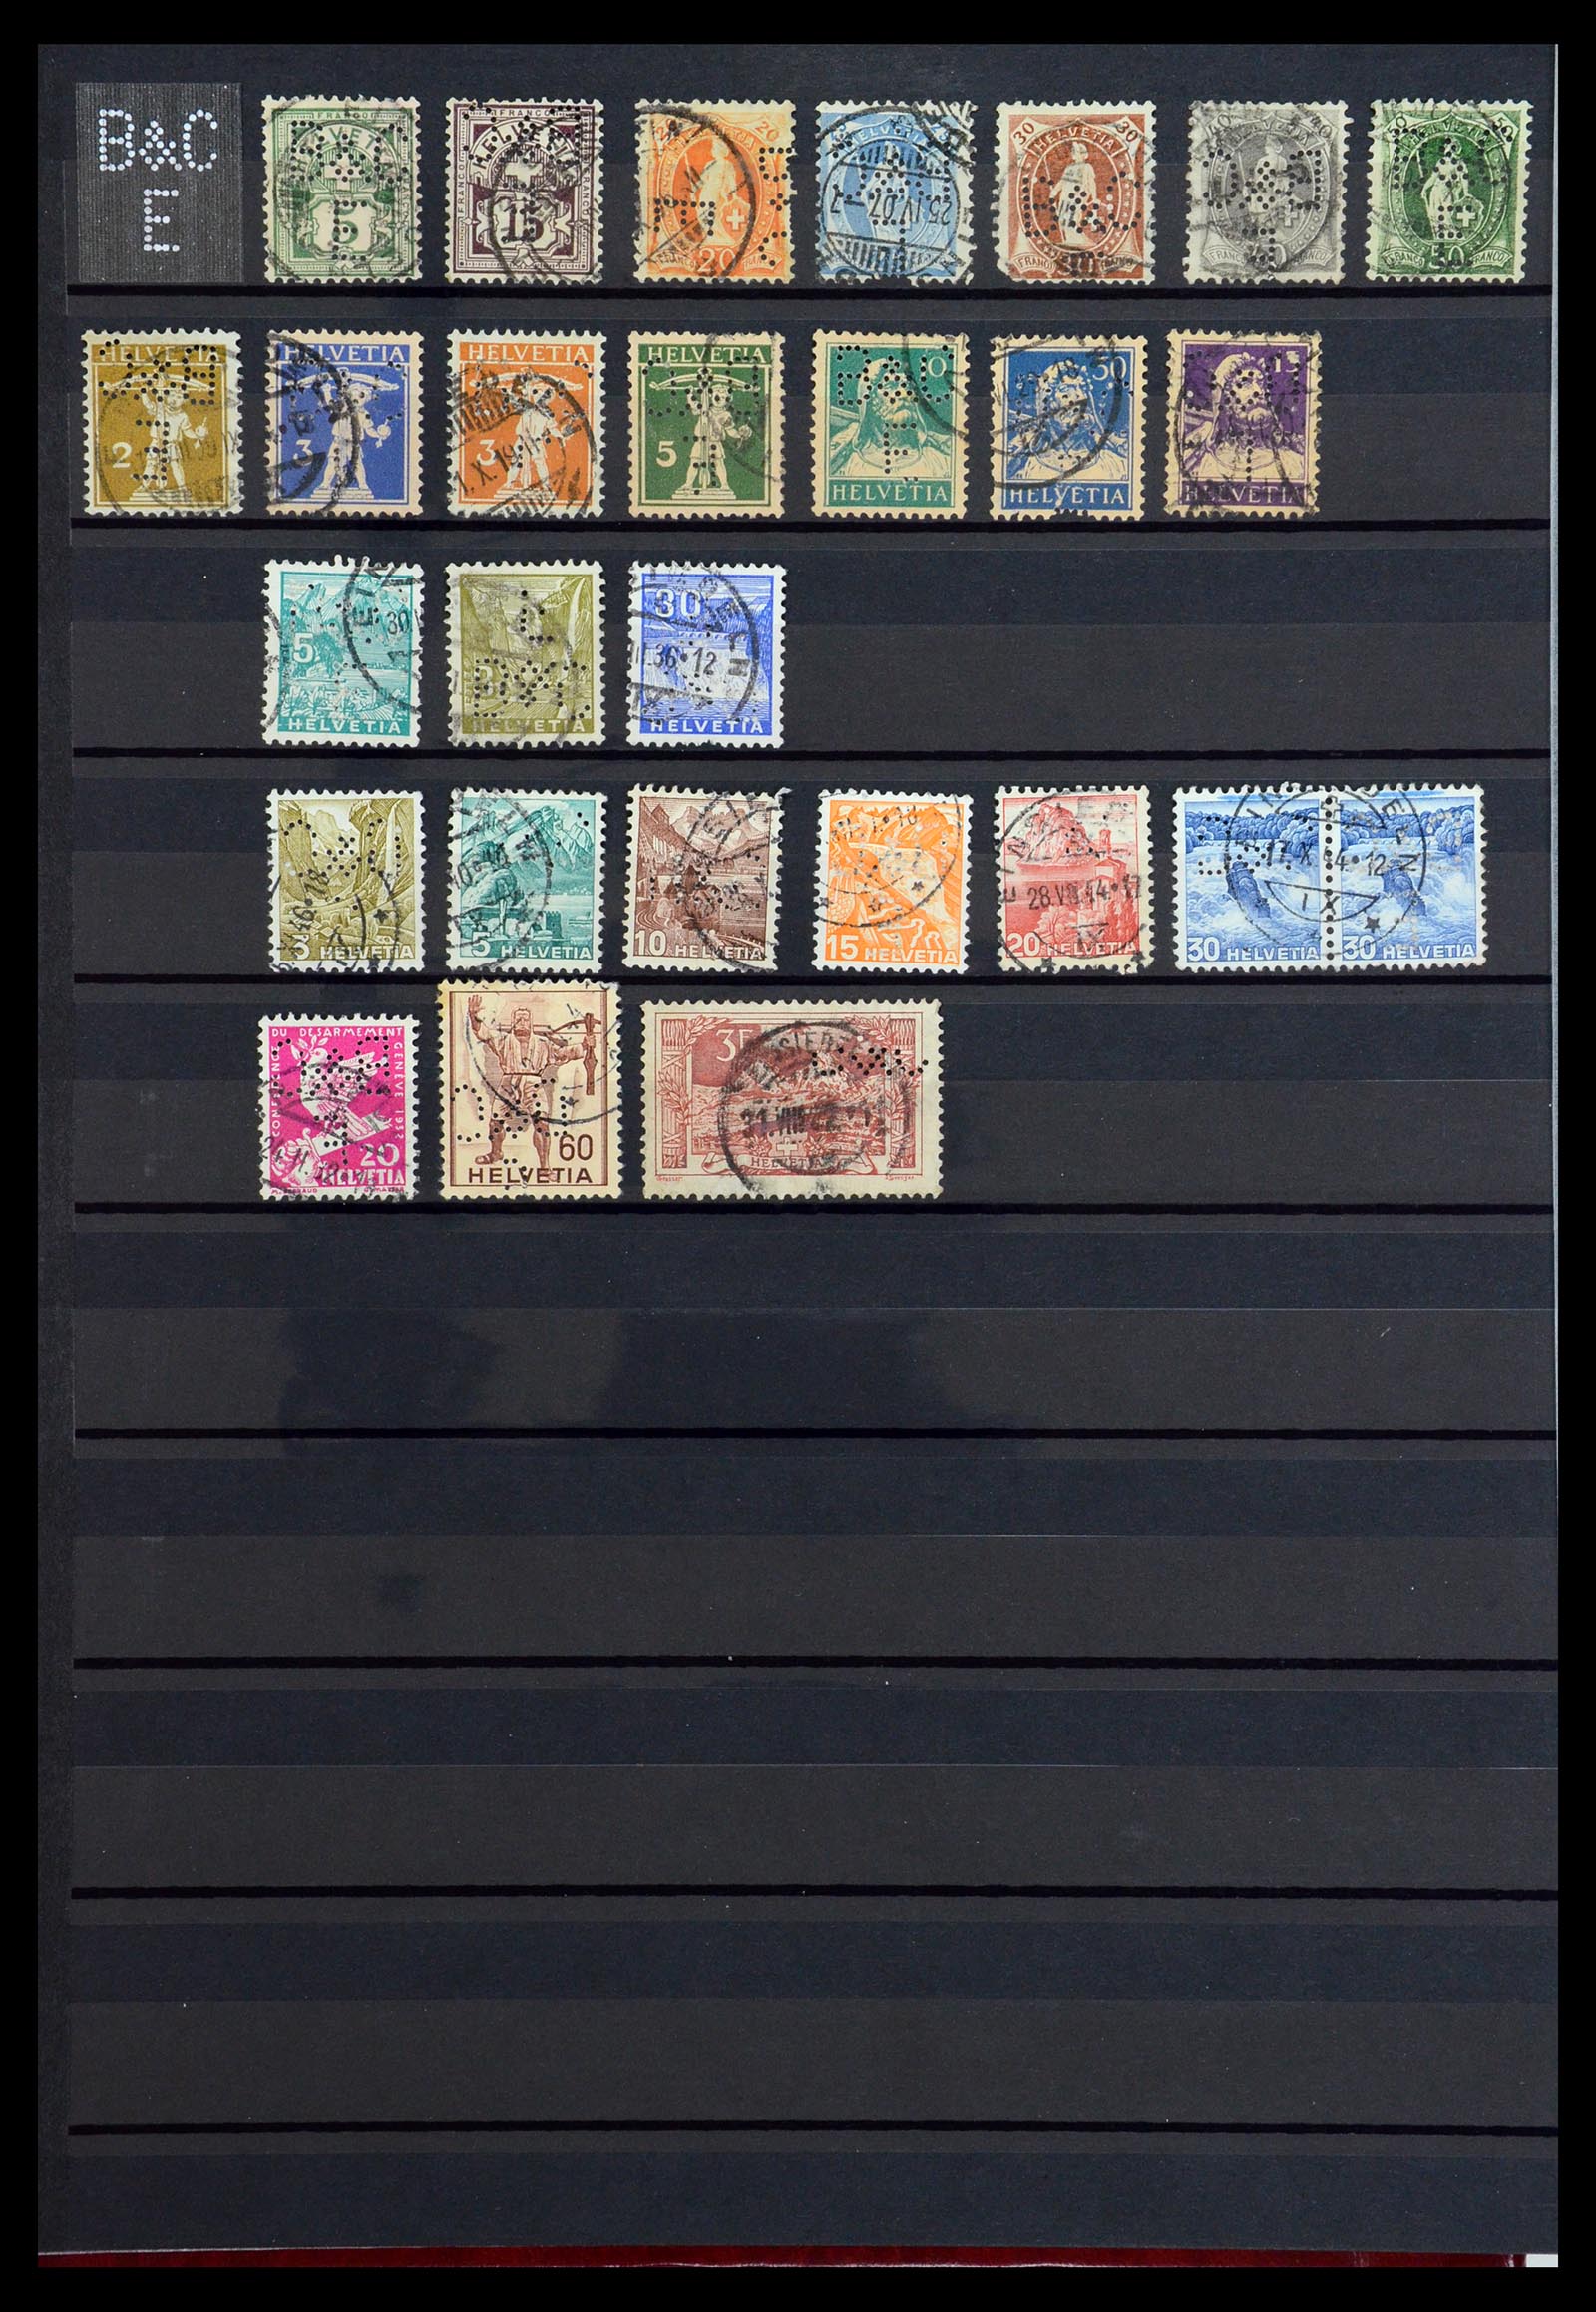 36372 008 - Stamp collection 36372 Switzerland perfins 1880-1960.